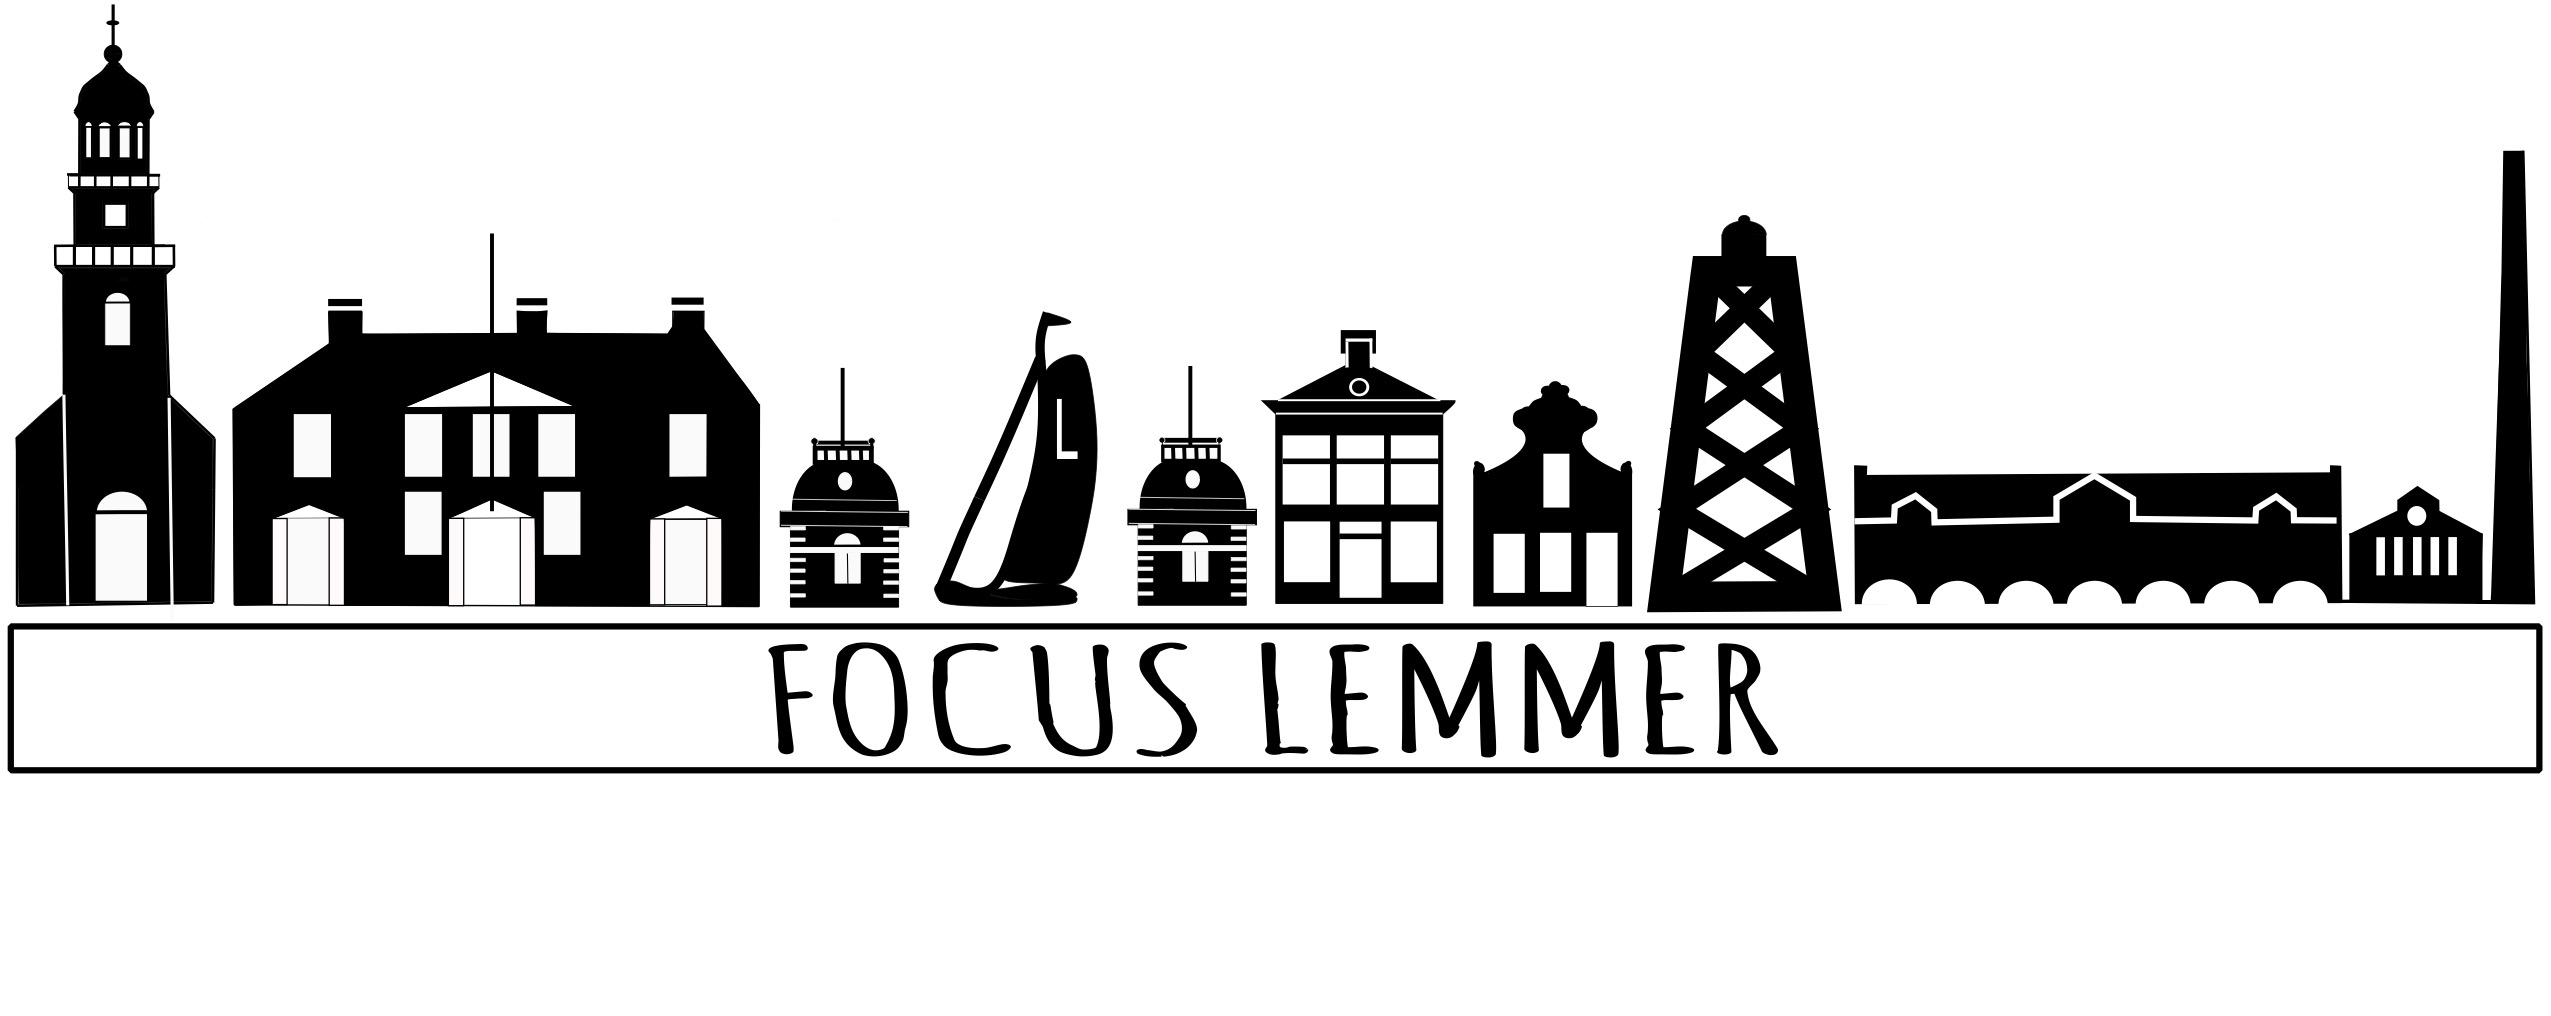 Focus Lemmer